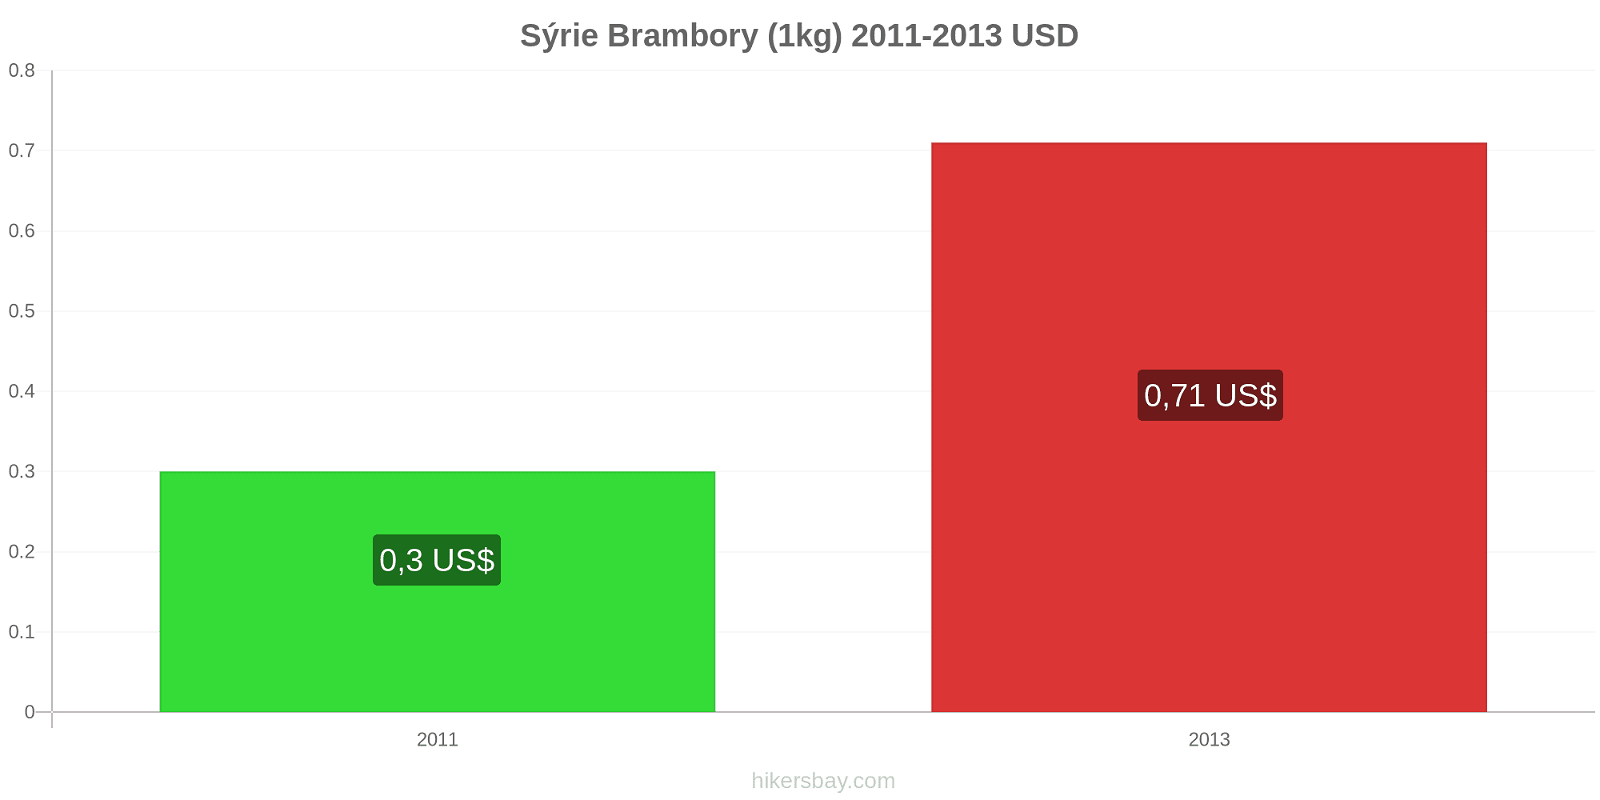 Sýrie změny cen Brambory (1kg) hikersbay.com